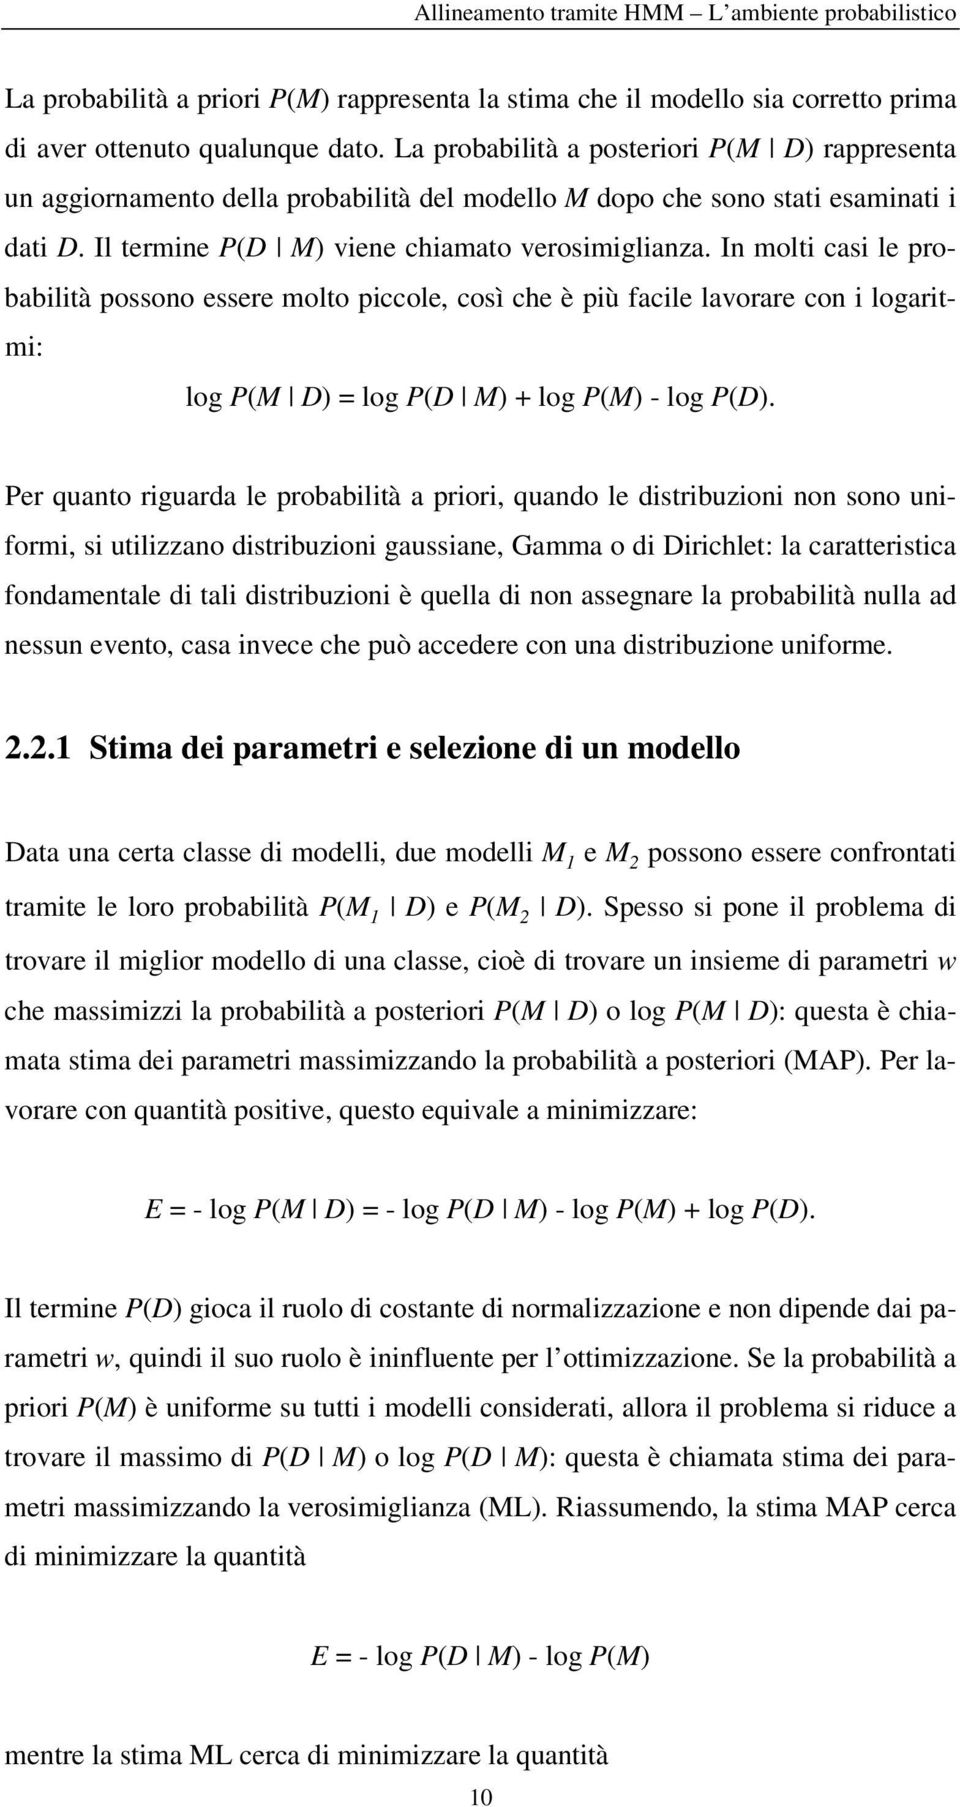 In mol cas le probablà possono essere molo pccole così che è pù facle lavorare con logarm: log M D log D M + log M - log D.